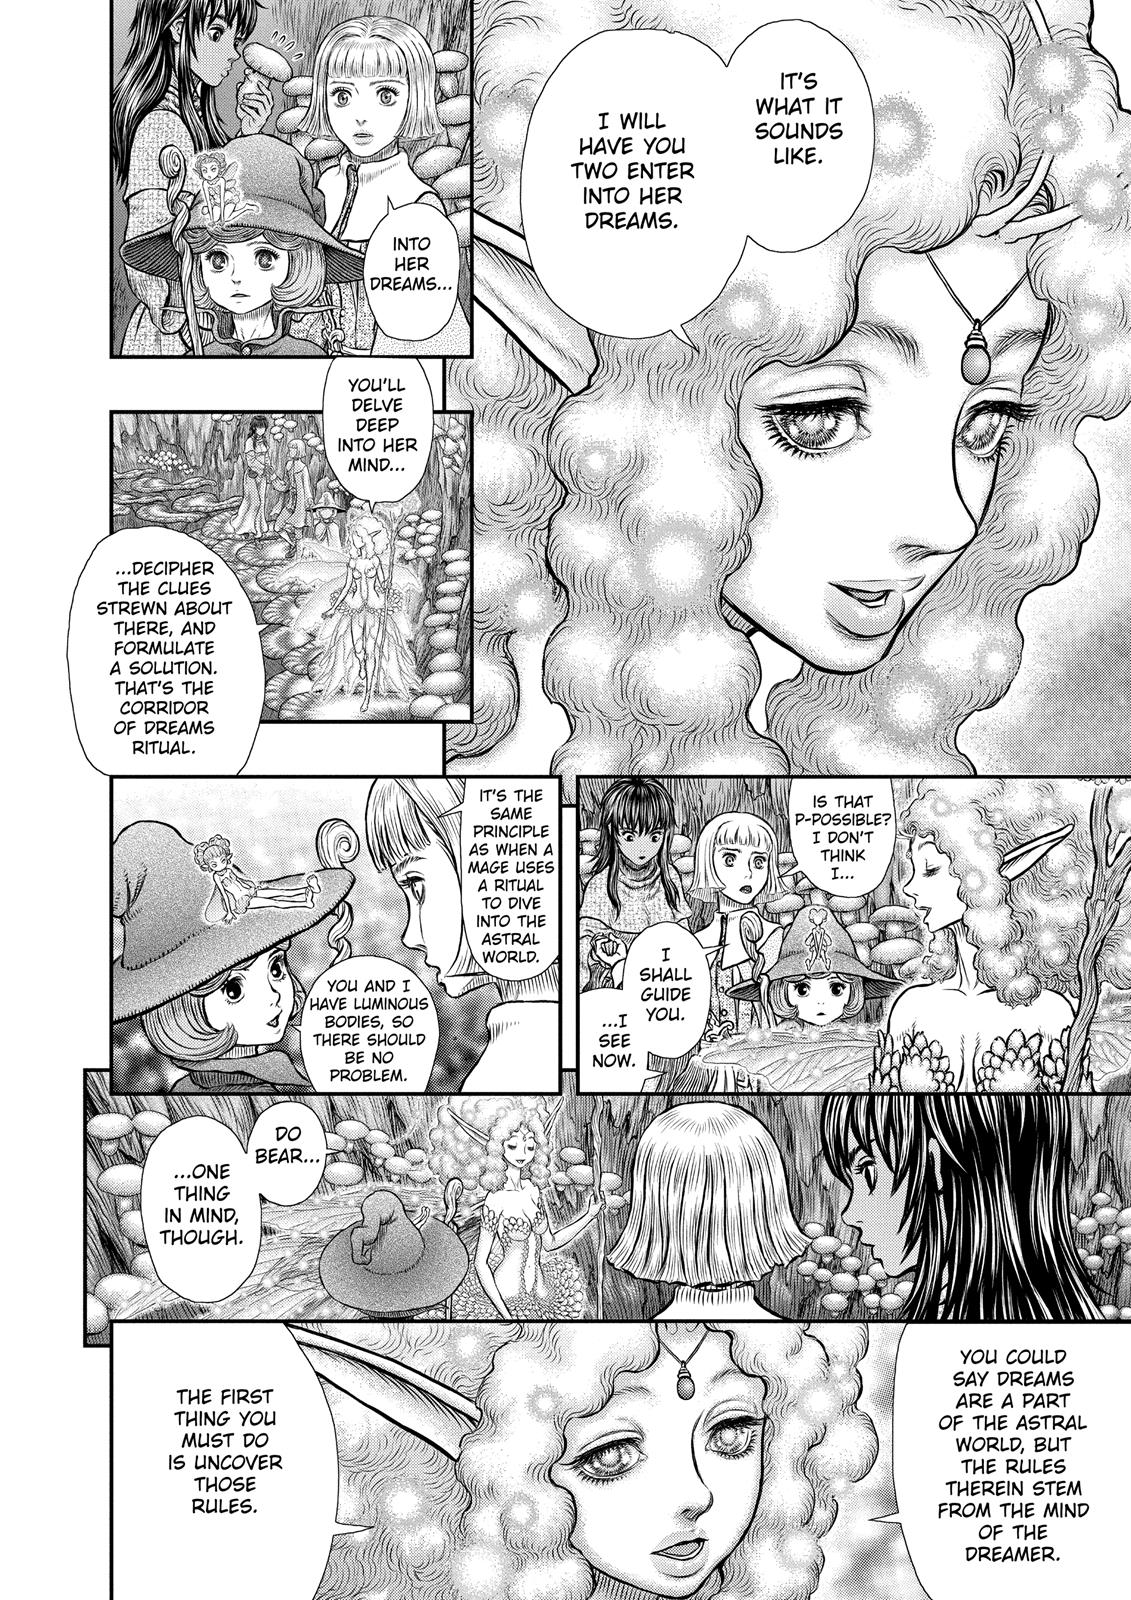 Berserk Manga Chapter 347 image 11